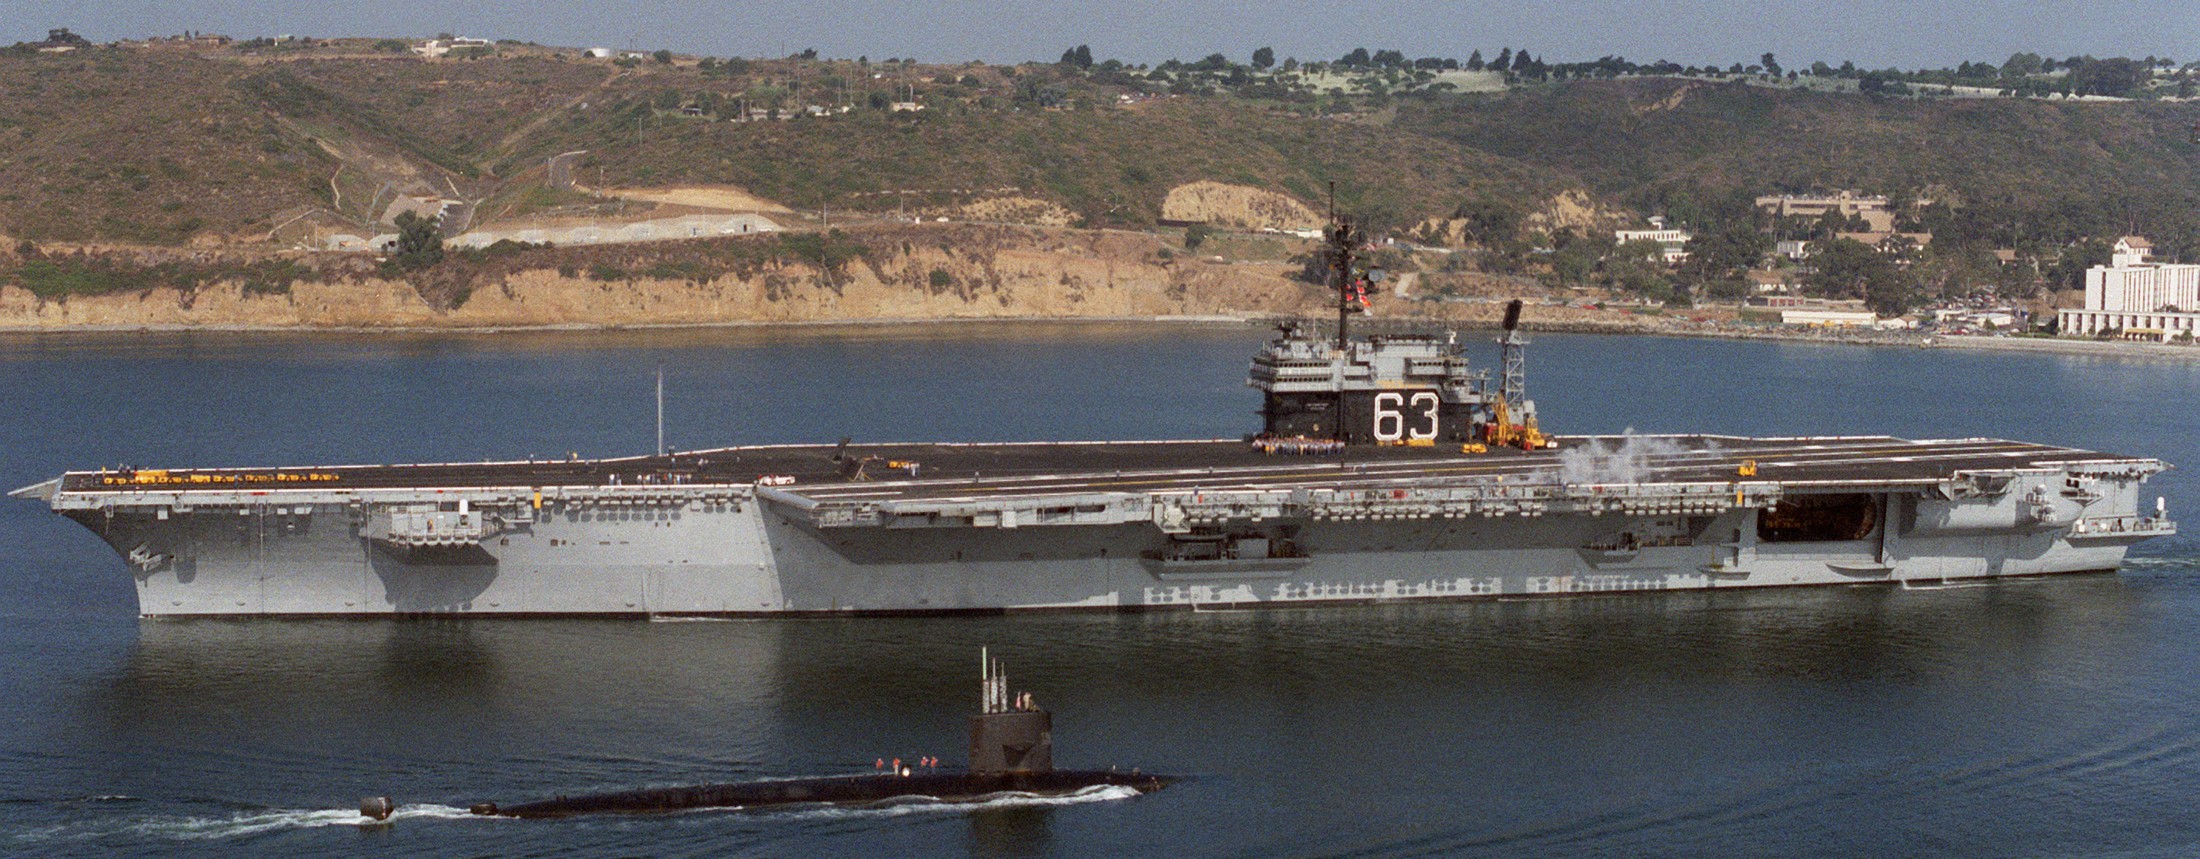 cv-63 uss kitty hawk aircraft carrier 451